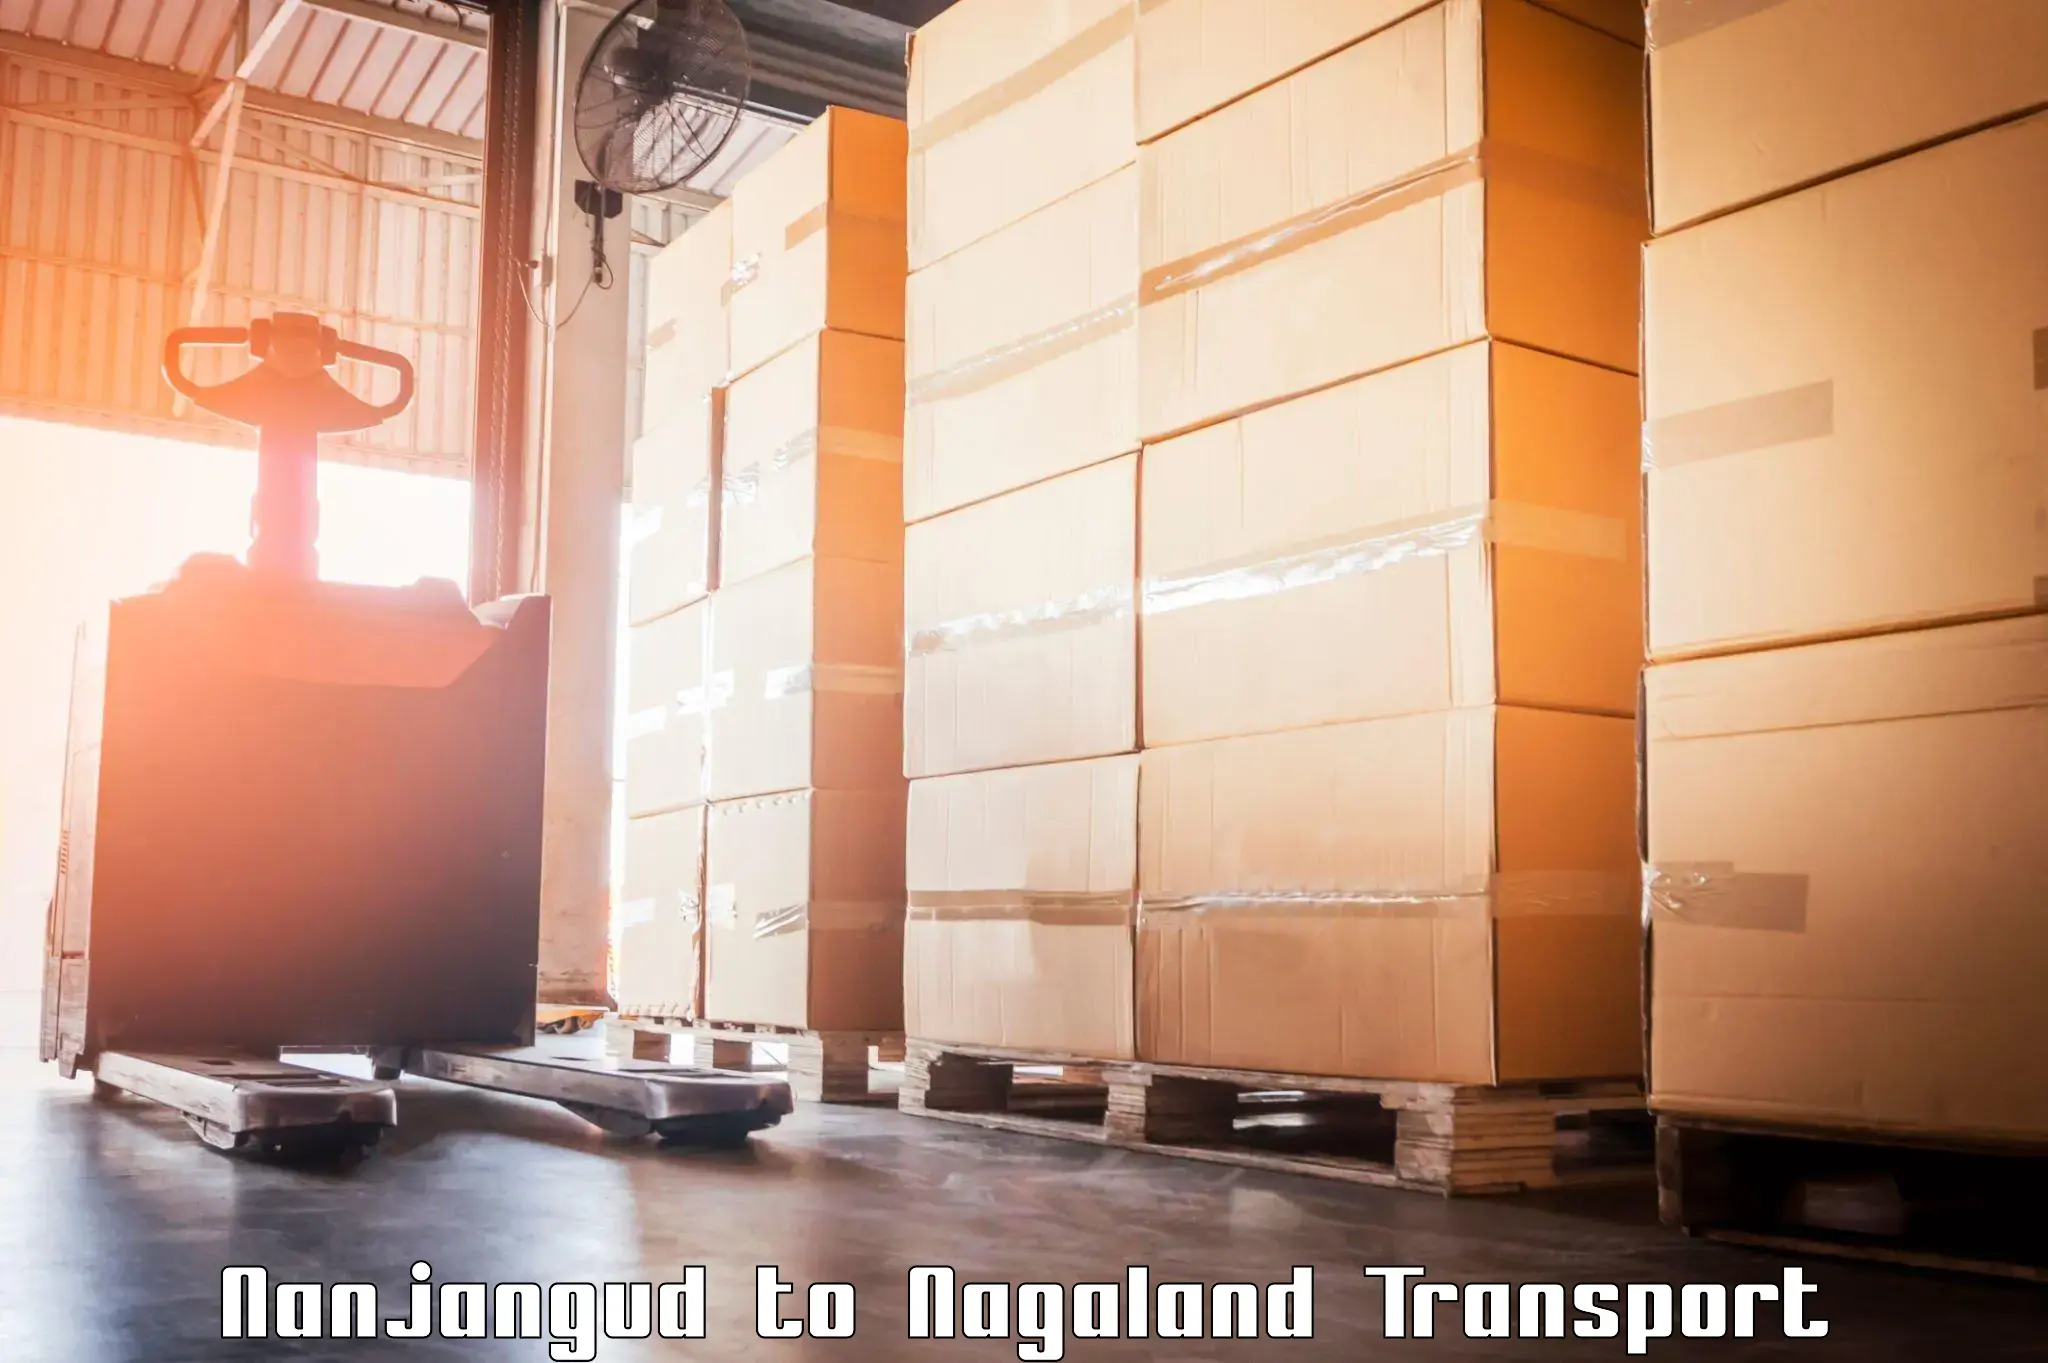 Land transport services Nanjangud to NIT Nagaland